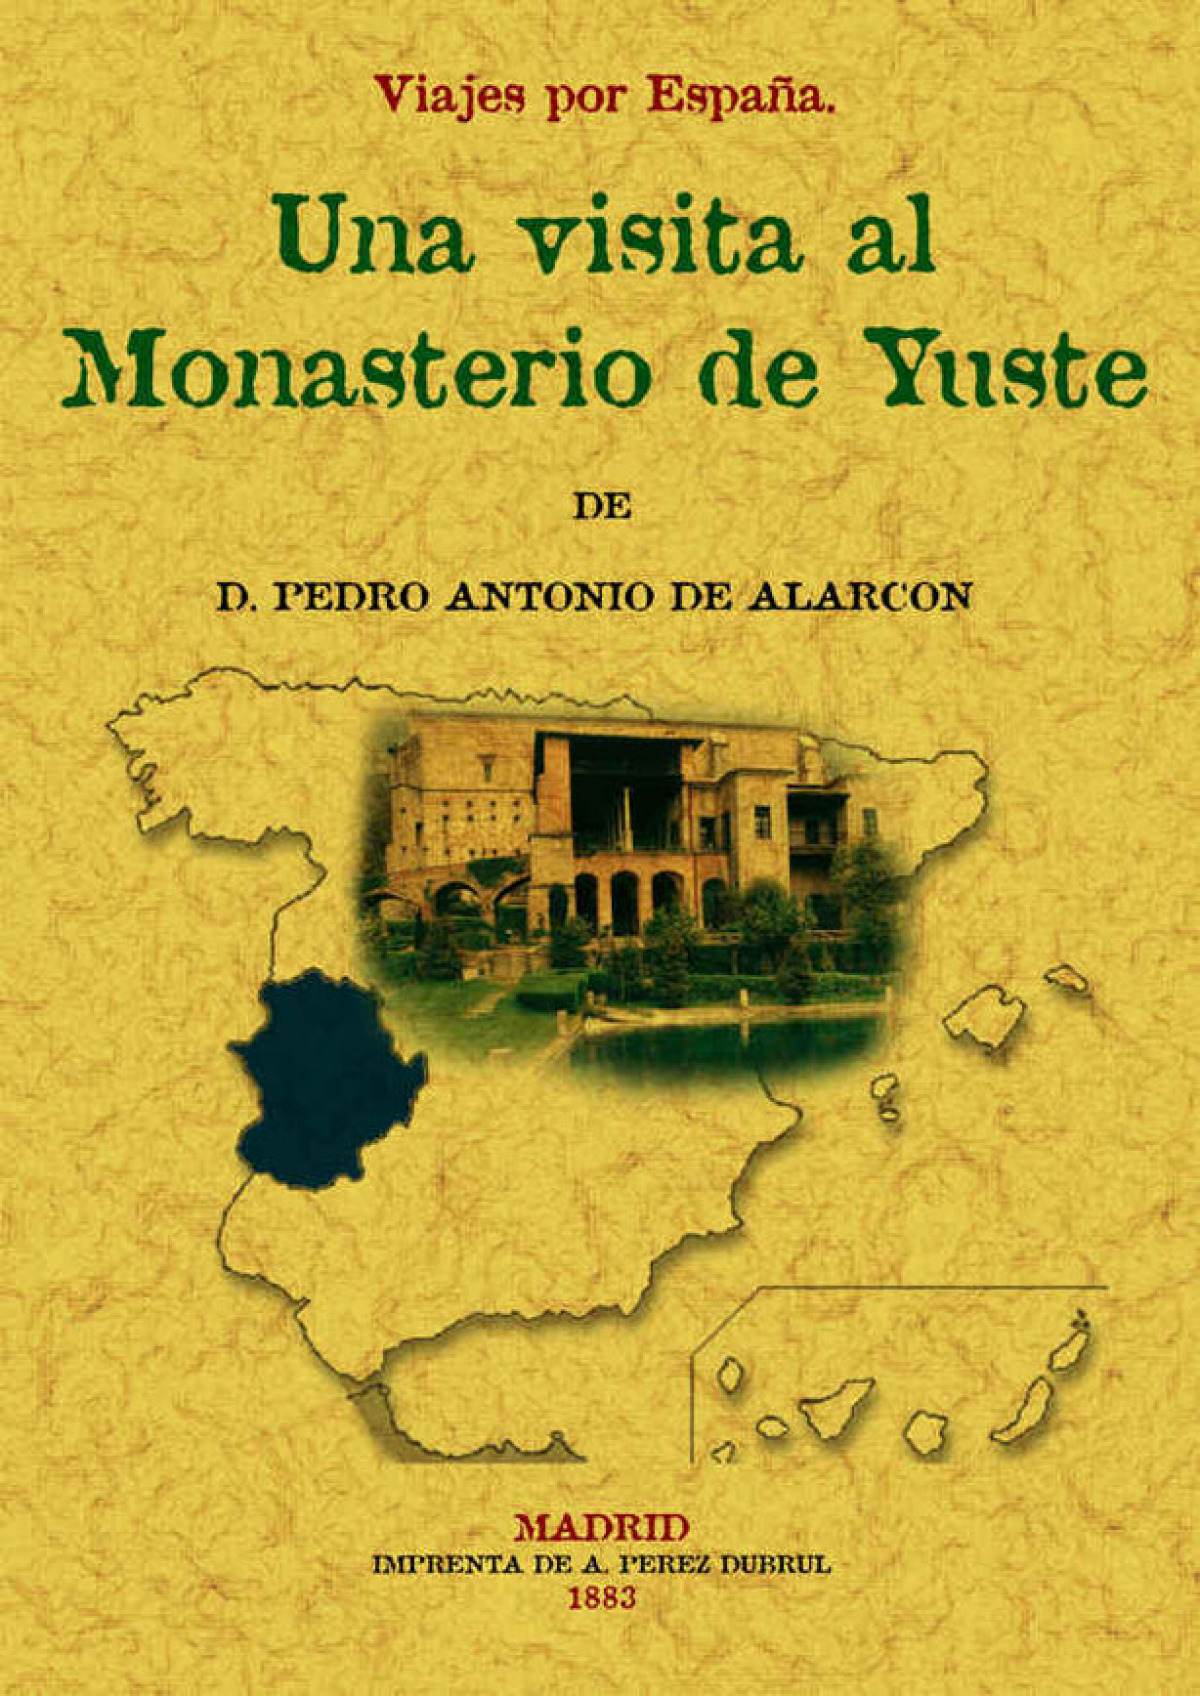 Visita al Monasterio de Yuste. Viajes por España - Alarcón, Pedro Antonio de